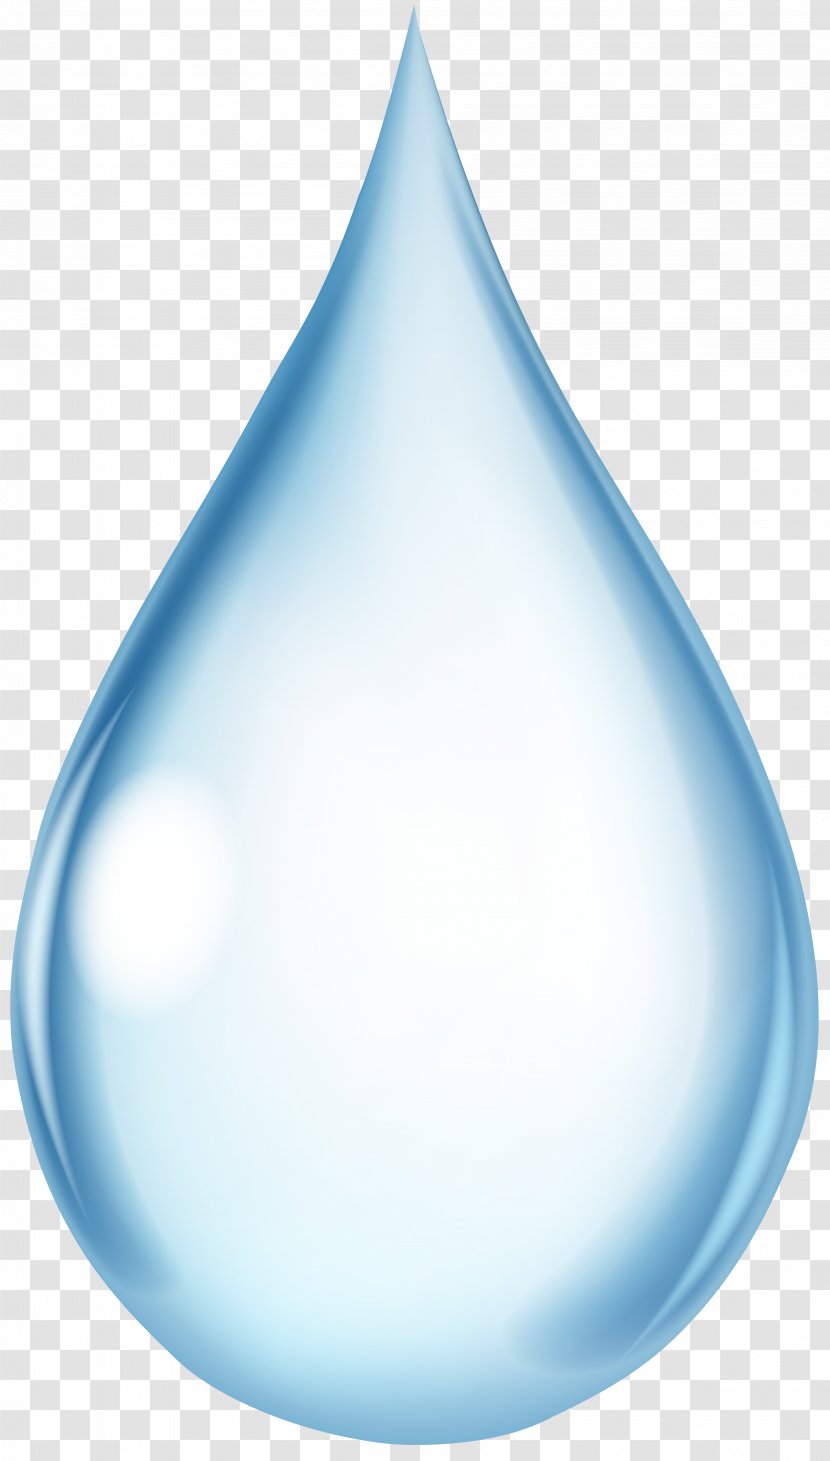 Water Drop Splash Clip Art - Blog - Drops Transparent PNG